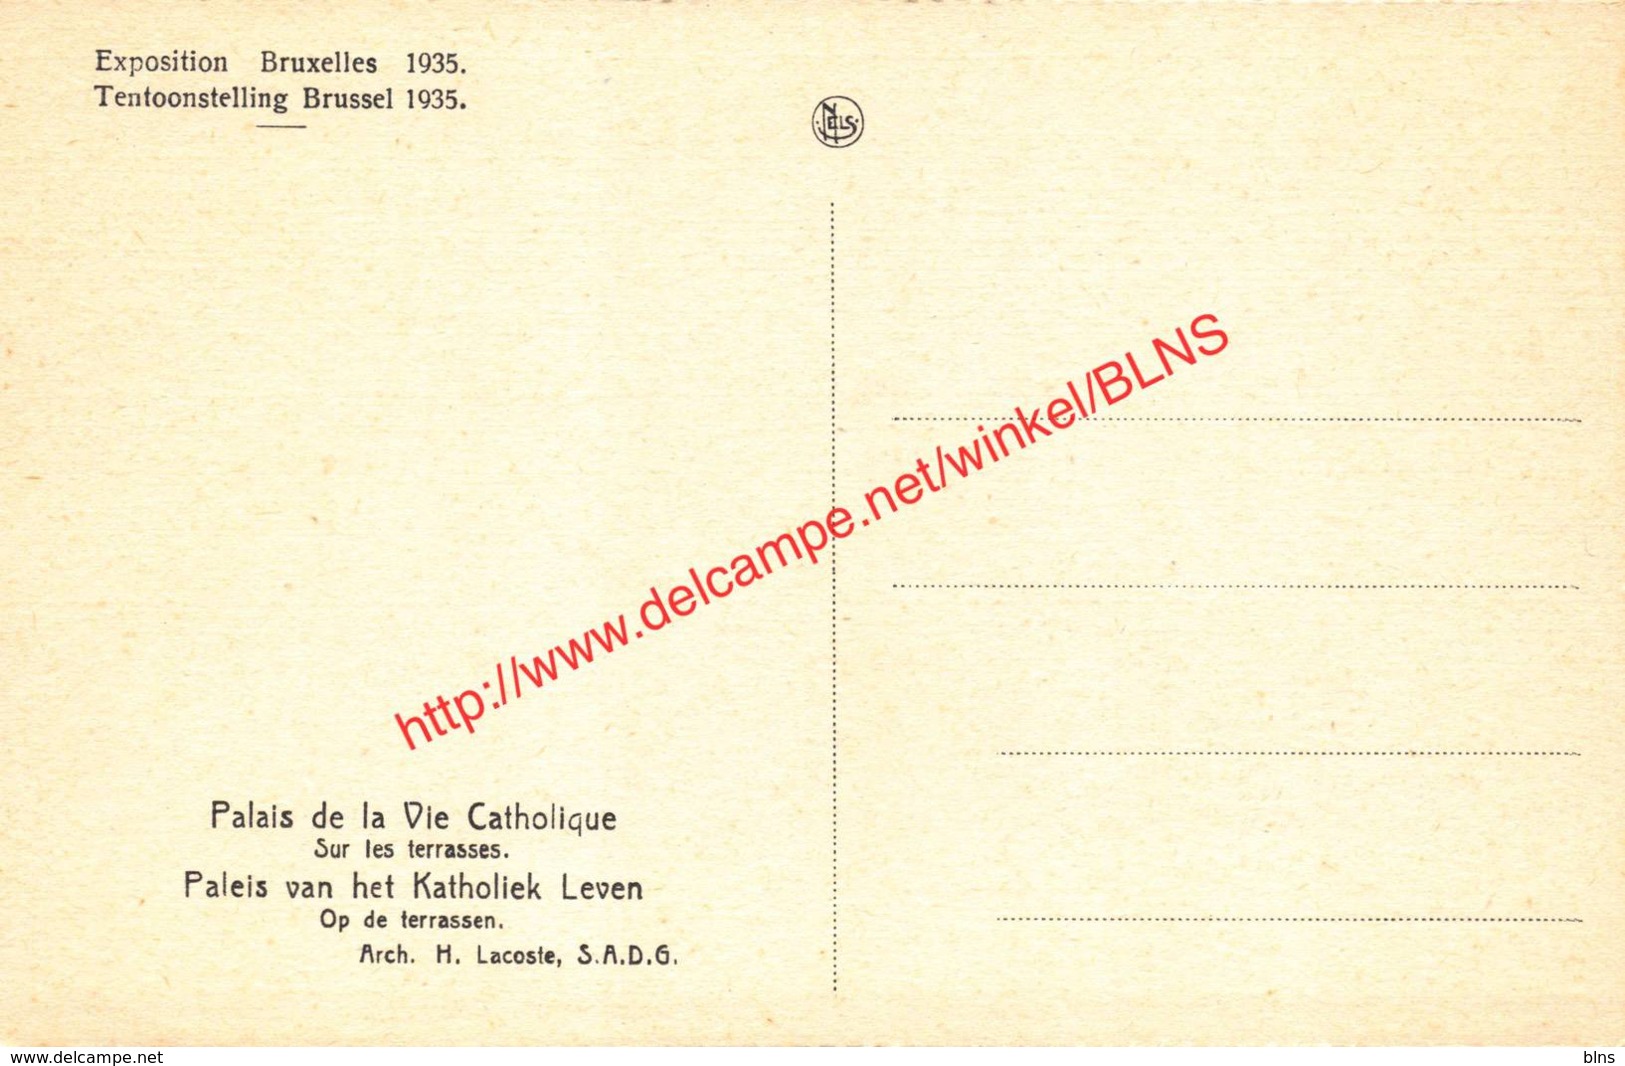 Palais De La Vie Catholique - Exposition Universelle Et Internationale De Bruxelles 1935 - Brussel Bruxelles - Universal Exhibitions